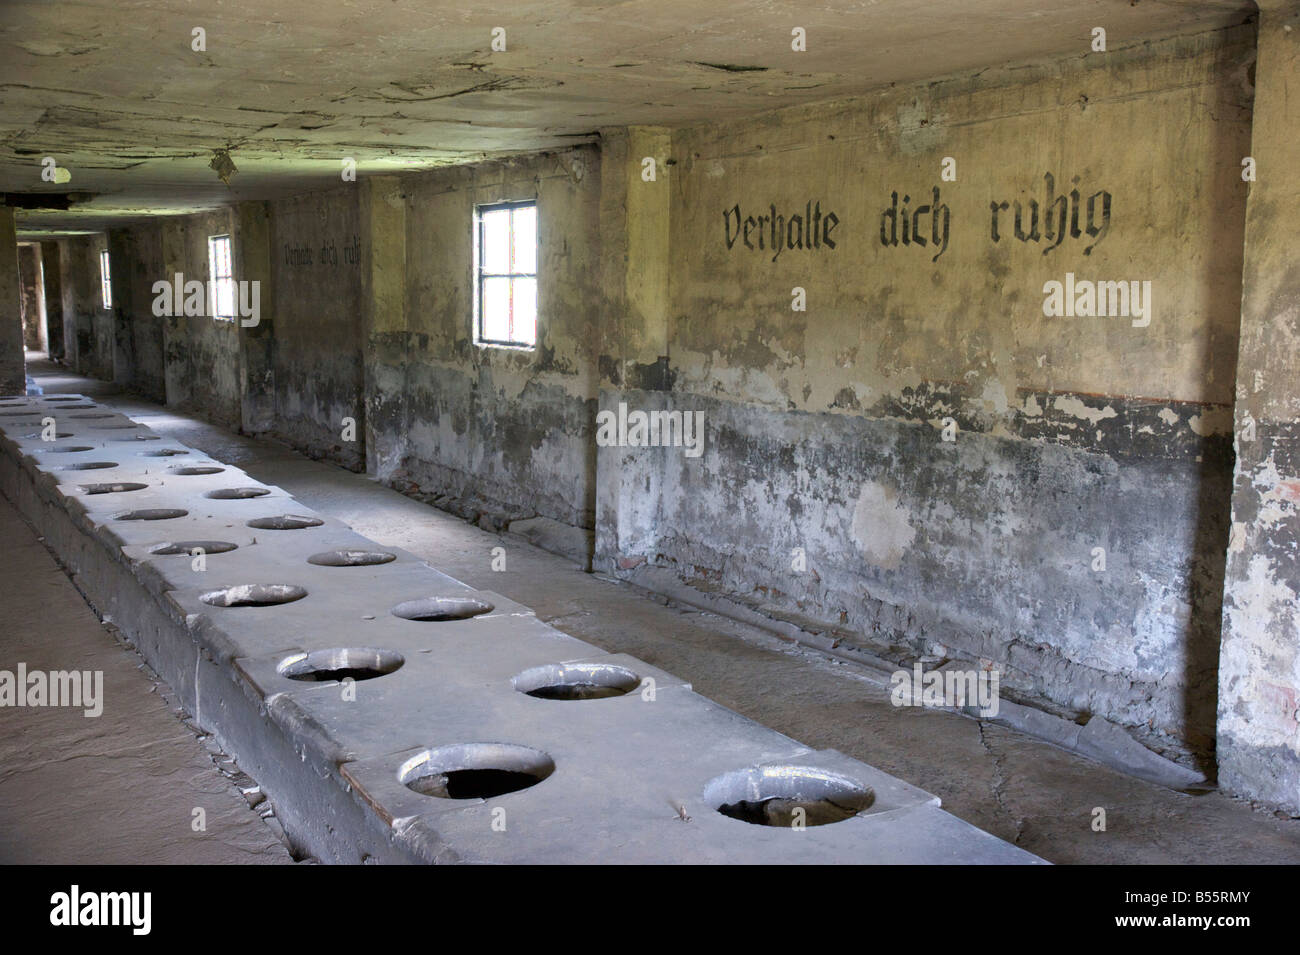 Masse WC Baracke mit Inschrift "Verhalte Dich Ruhig" im ehemaligen KZ Auschwitz II (Birkenau) Stockfoto